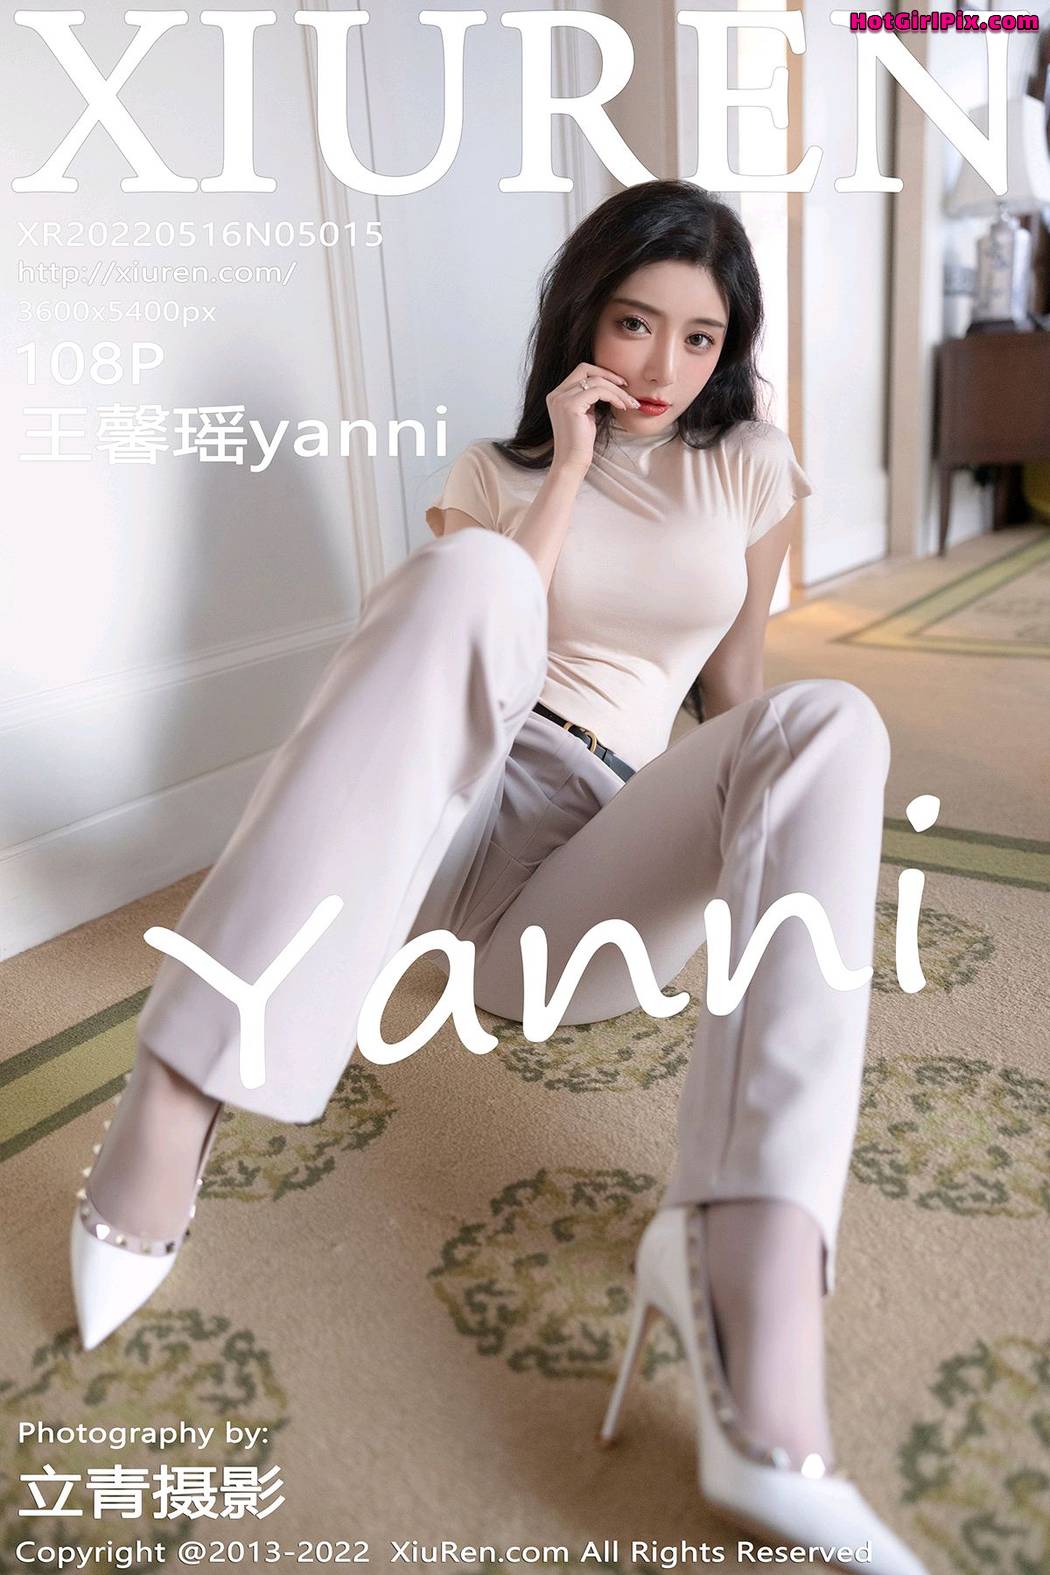 [XIUREN] No.5015 Wang Xin Yao 王馨瑶yanni Cover Photo